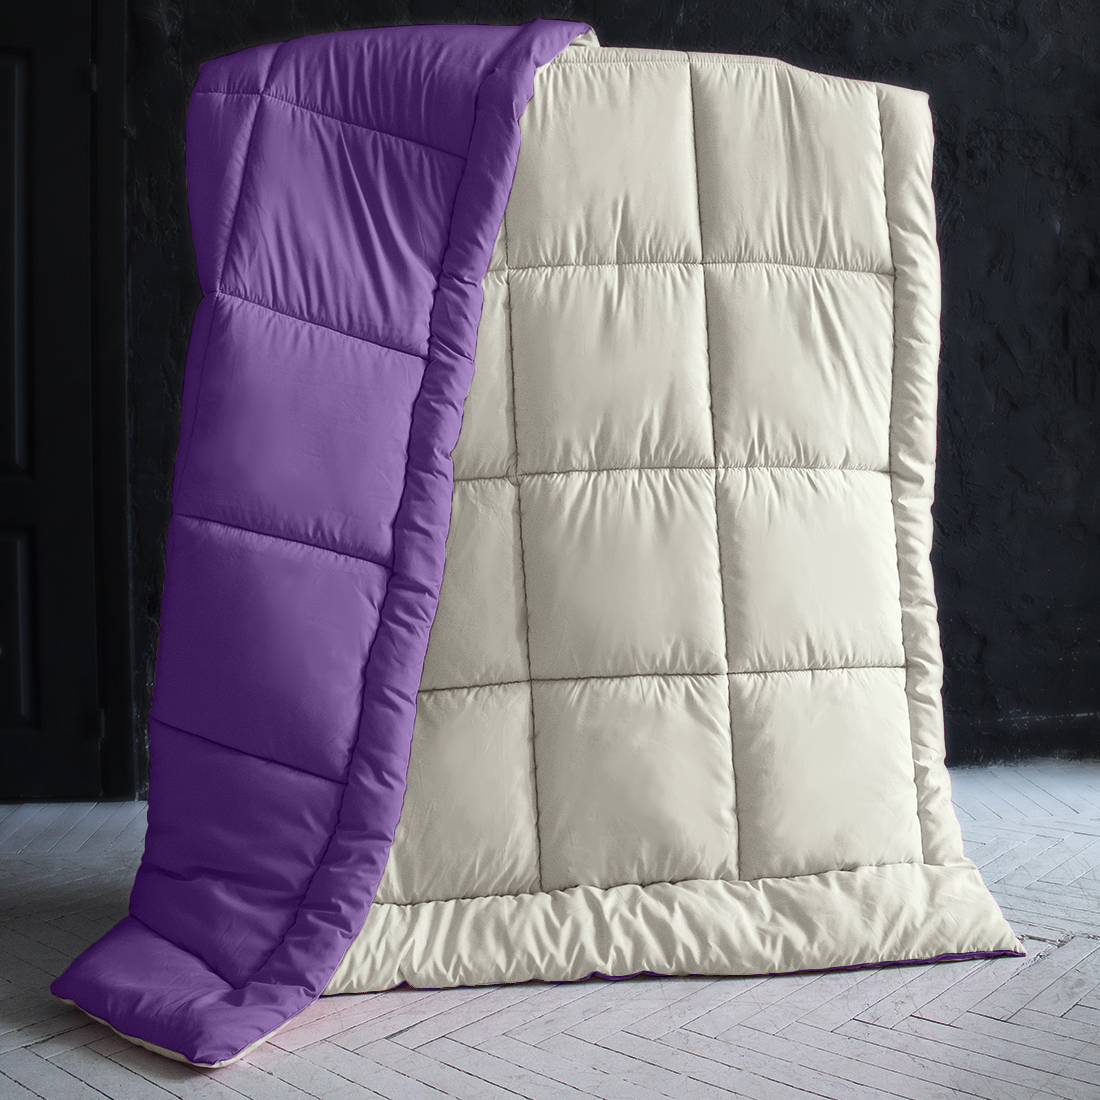 Одеяло MultiColor Цвет: Ванильный/Темно-Фиолетовый (200х220 см), размер 200х220 см pva410832 Одеяло MultiColor Цвет: Ванильный/Темно-Фиолетовый (200х220 см) - фото 1